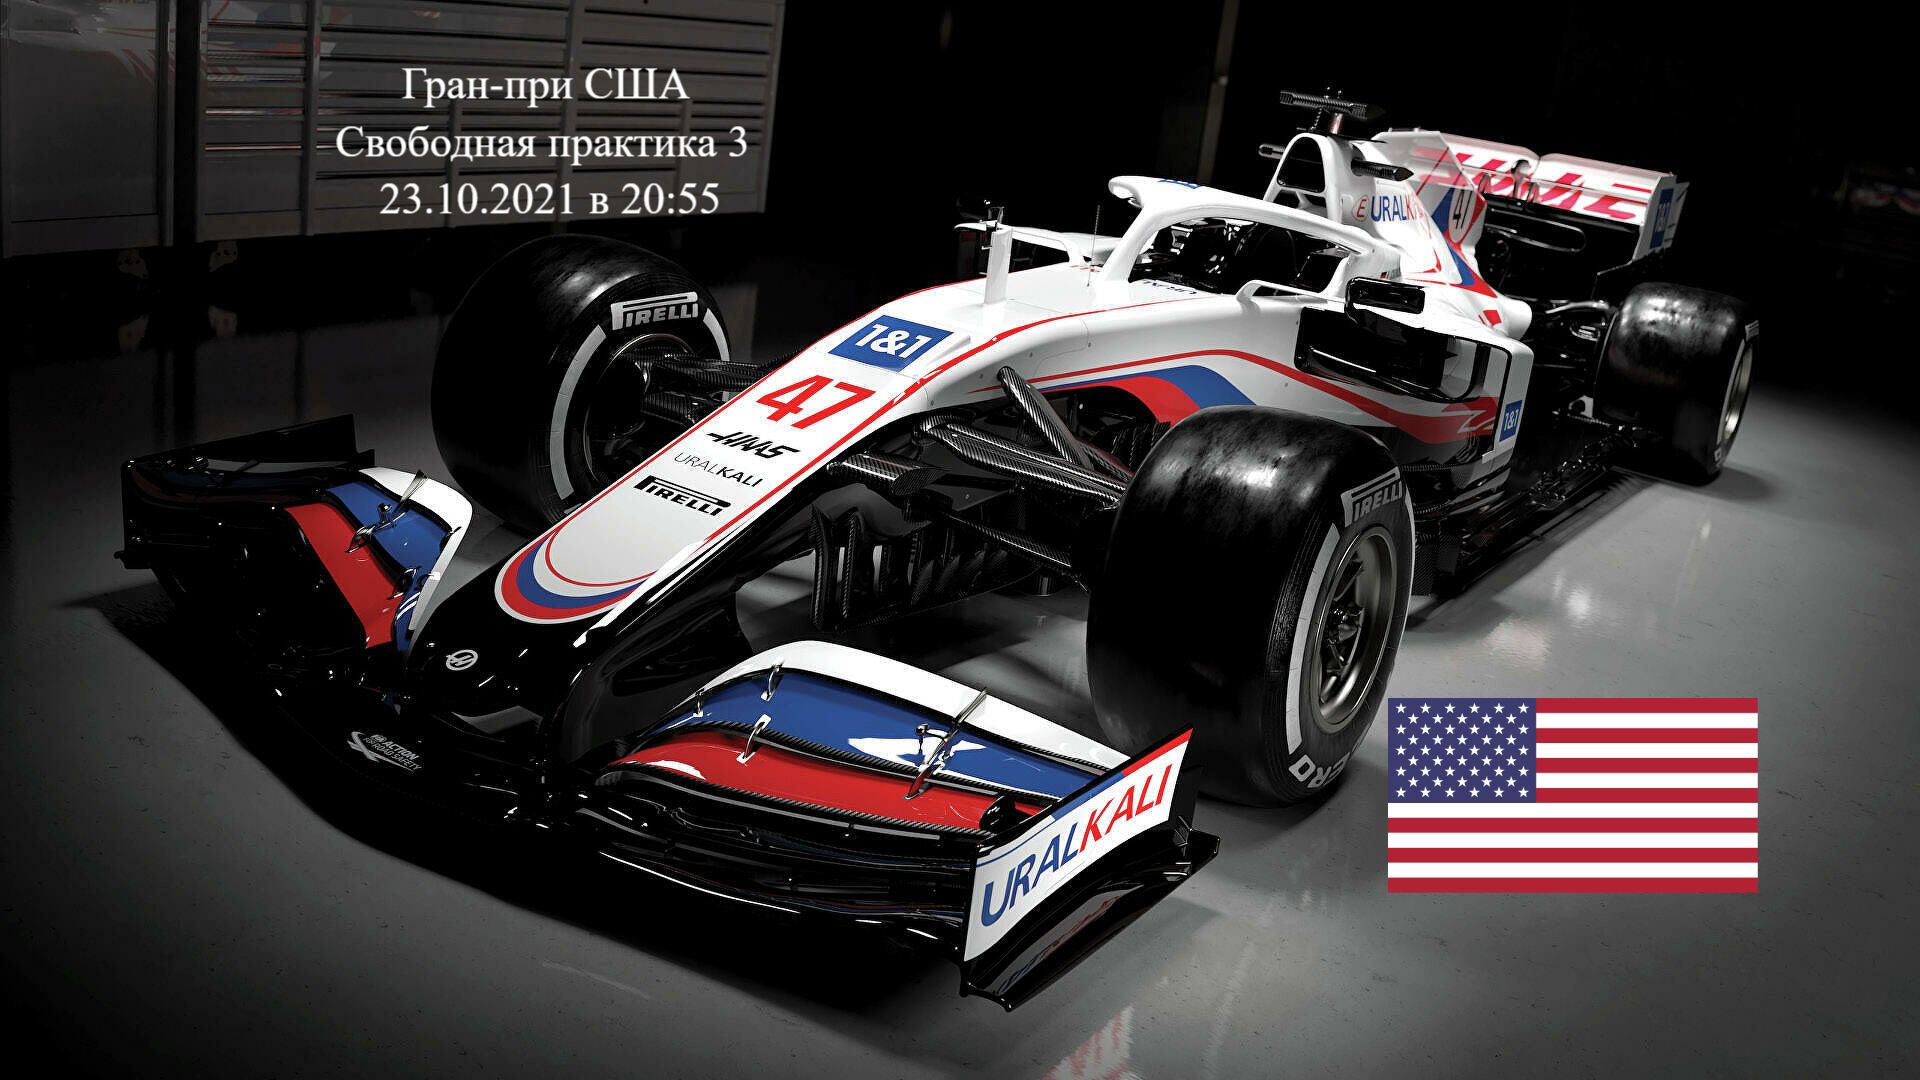 Формула 1 Гран-при США 2021, Свободная практика 3 23.10.2021 смотреть онлайн